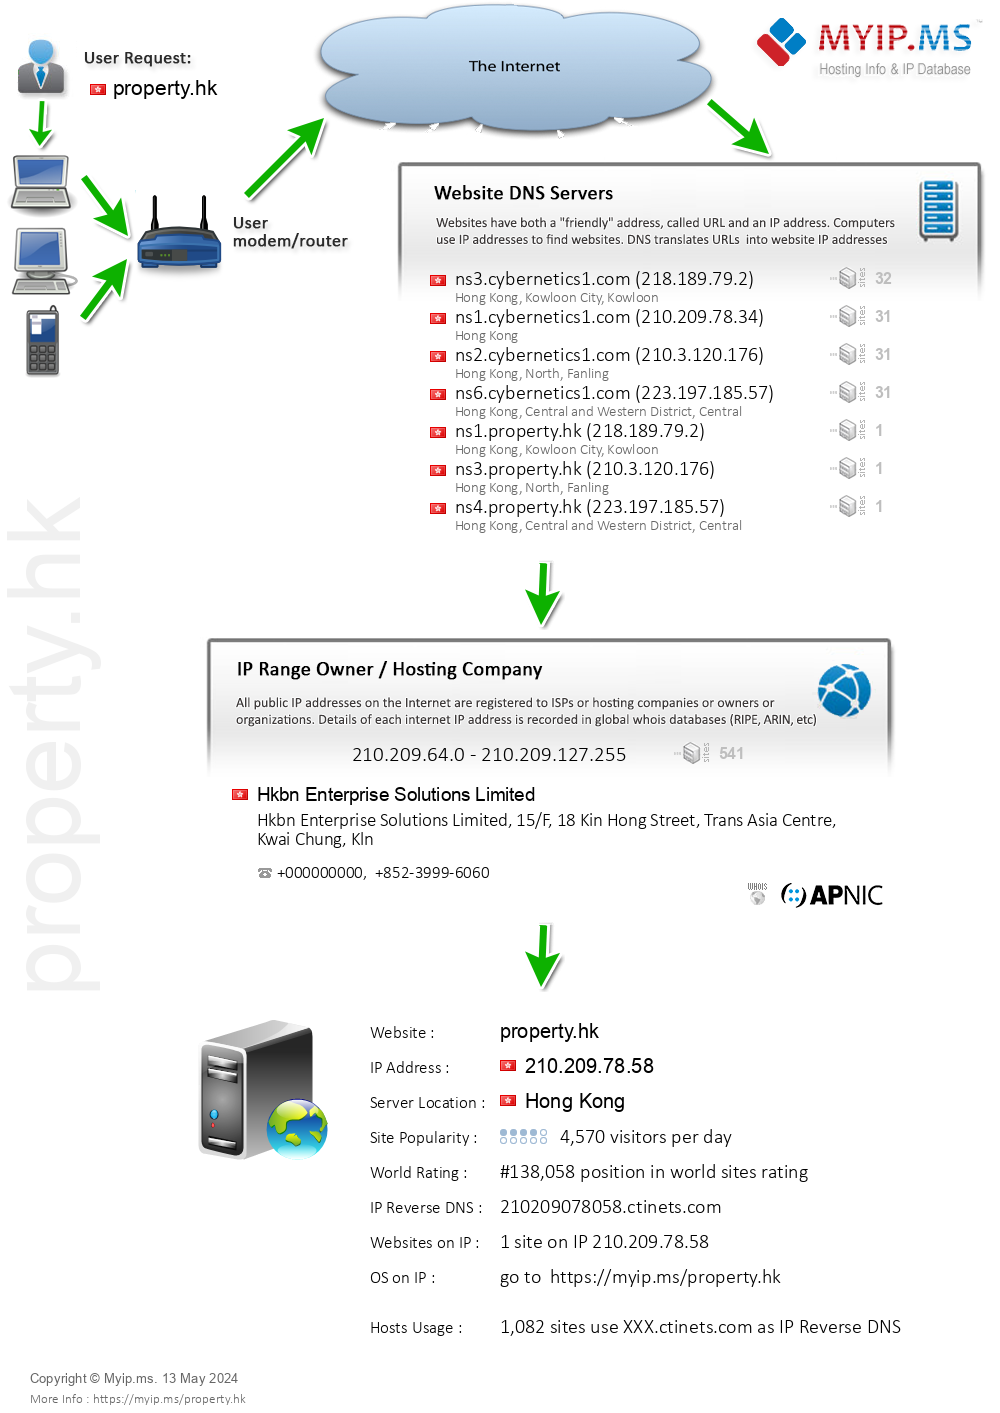 Property.hk - Website Hosting Visual IP Diagram